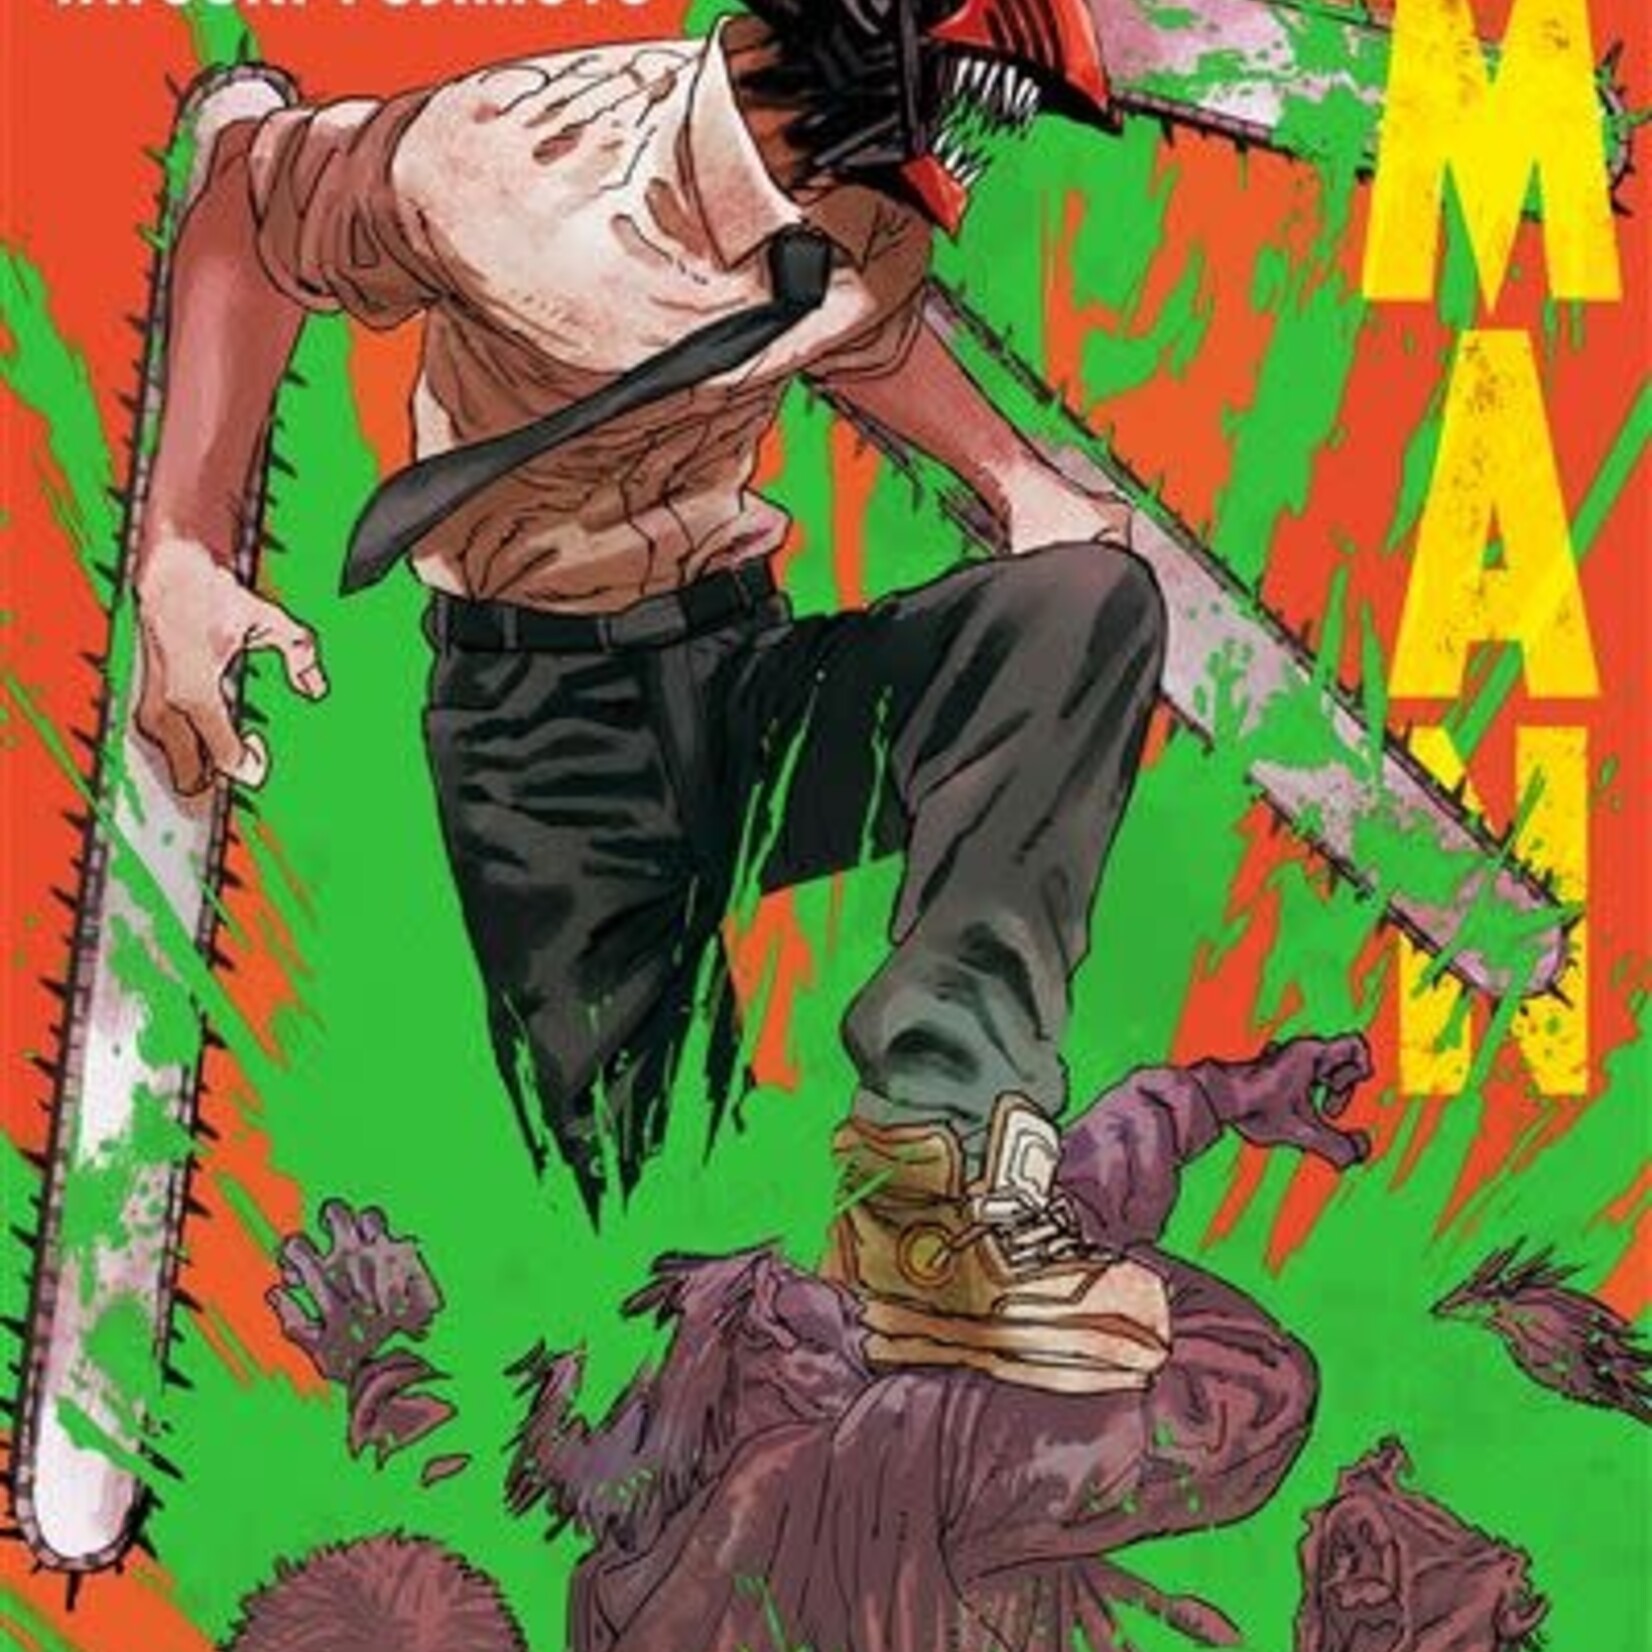 Kazé Shonen Manga - Chainsaw Man Tome 01